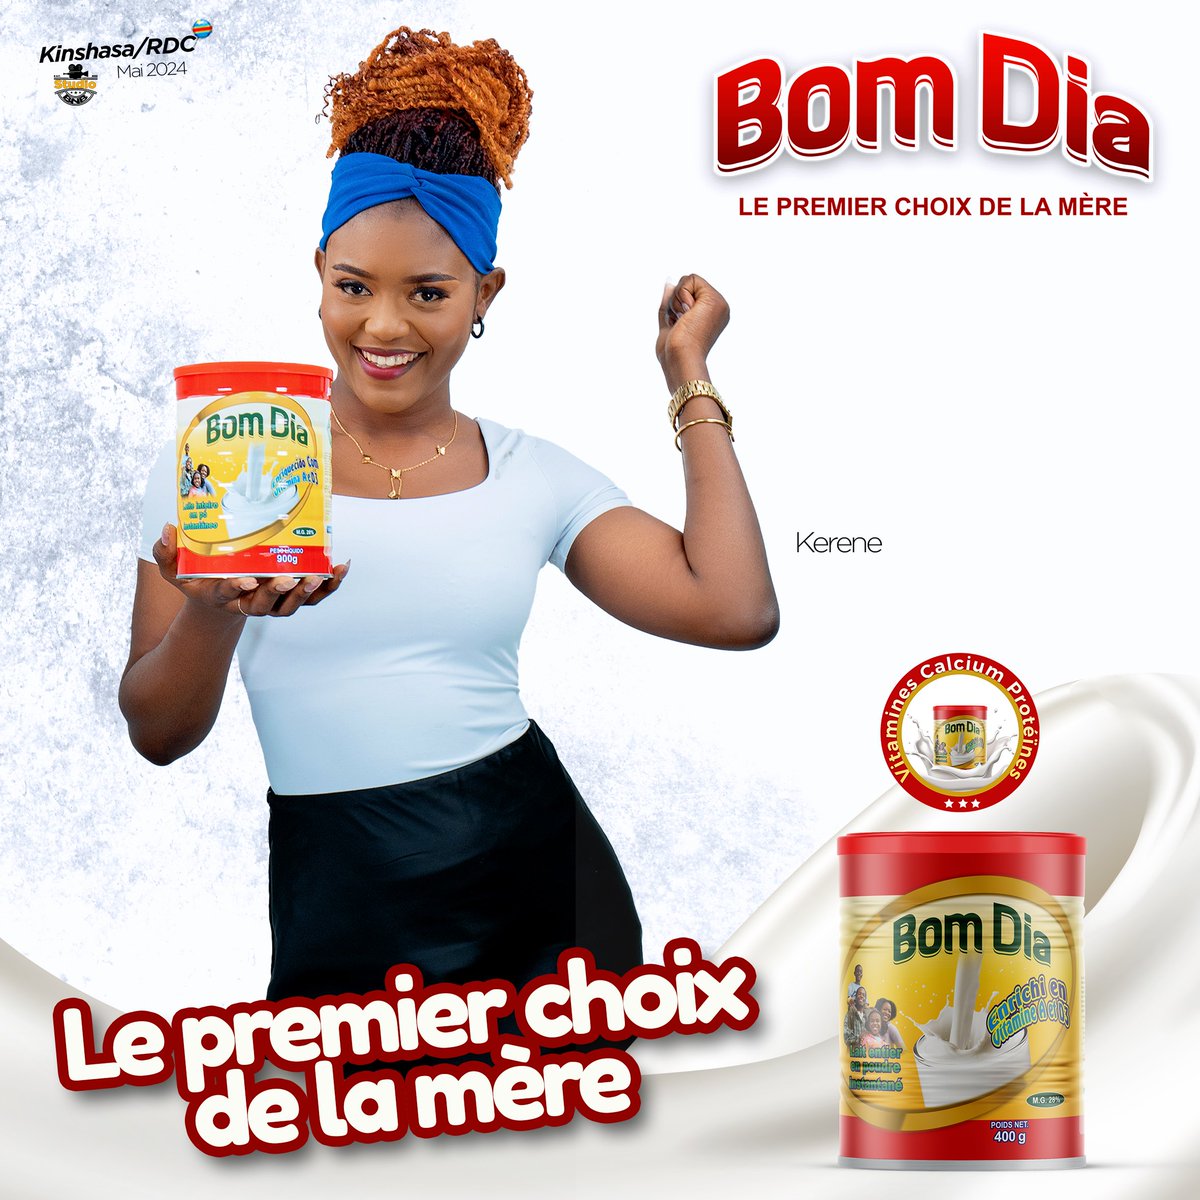 Buvez du lait Bom Dia pour une dose supplémentaire de force et de vitalité !

Le lait Bom Dia, le premier choix de la mère
#BonAppetitRDC #bomdia #RDC2023 #ELSsarl #BisoNaBiso #Aquasplash #KinMarché